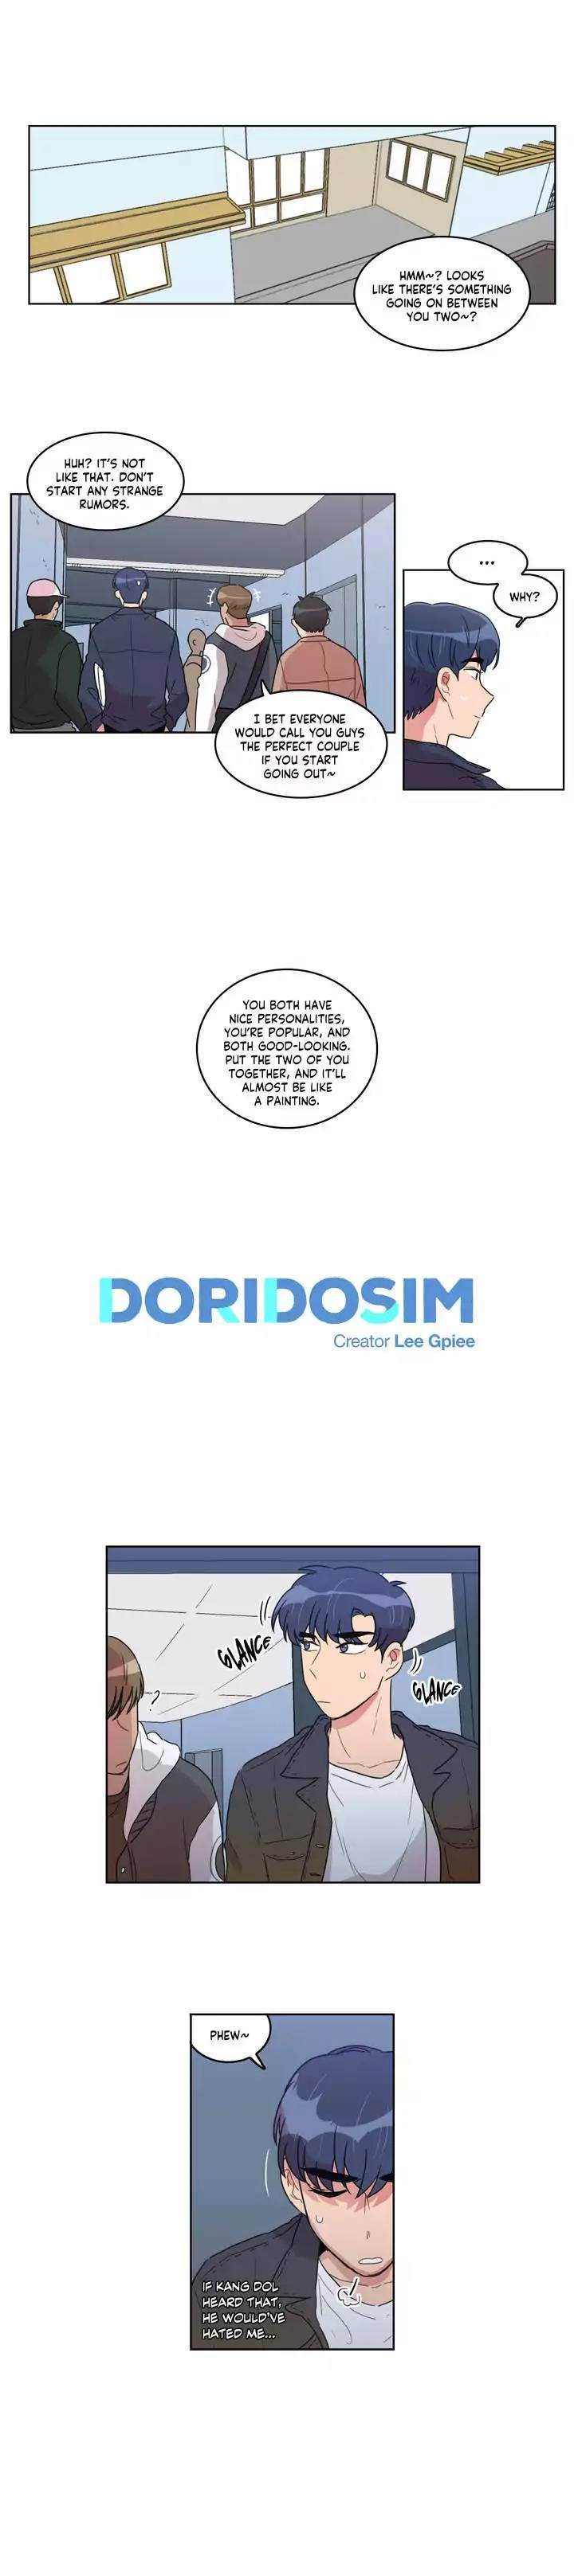 Doridosim - Chapter 30 Page 1